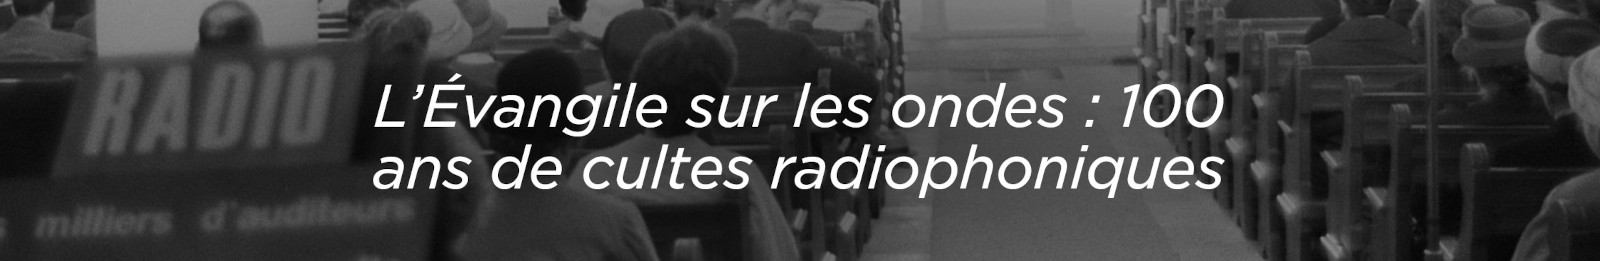 100 ans d'archives radio - découvrez notre webdoc